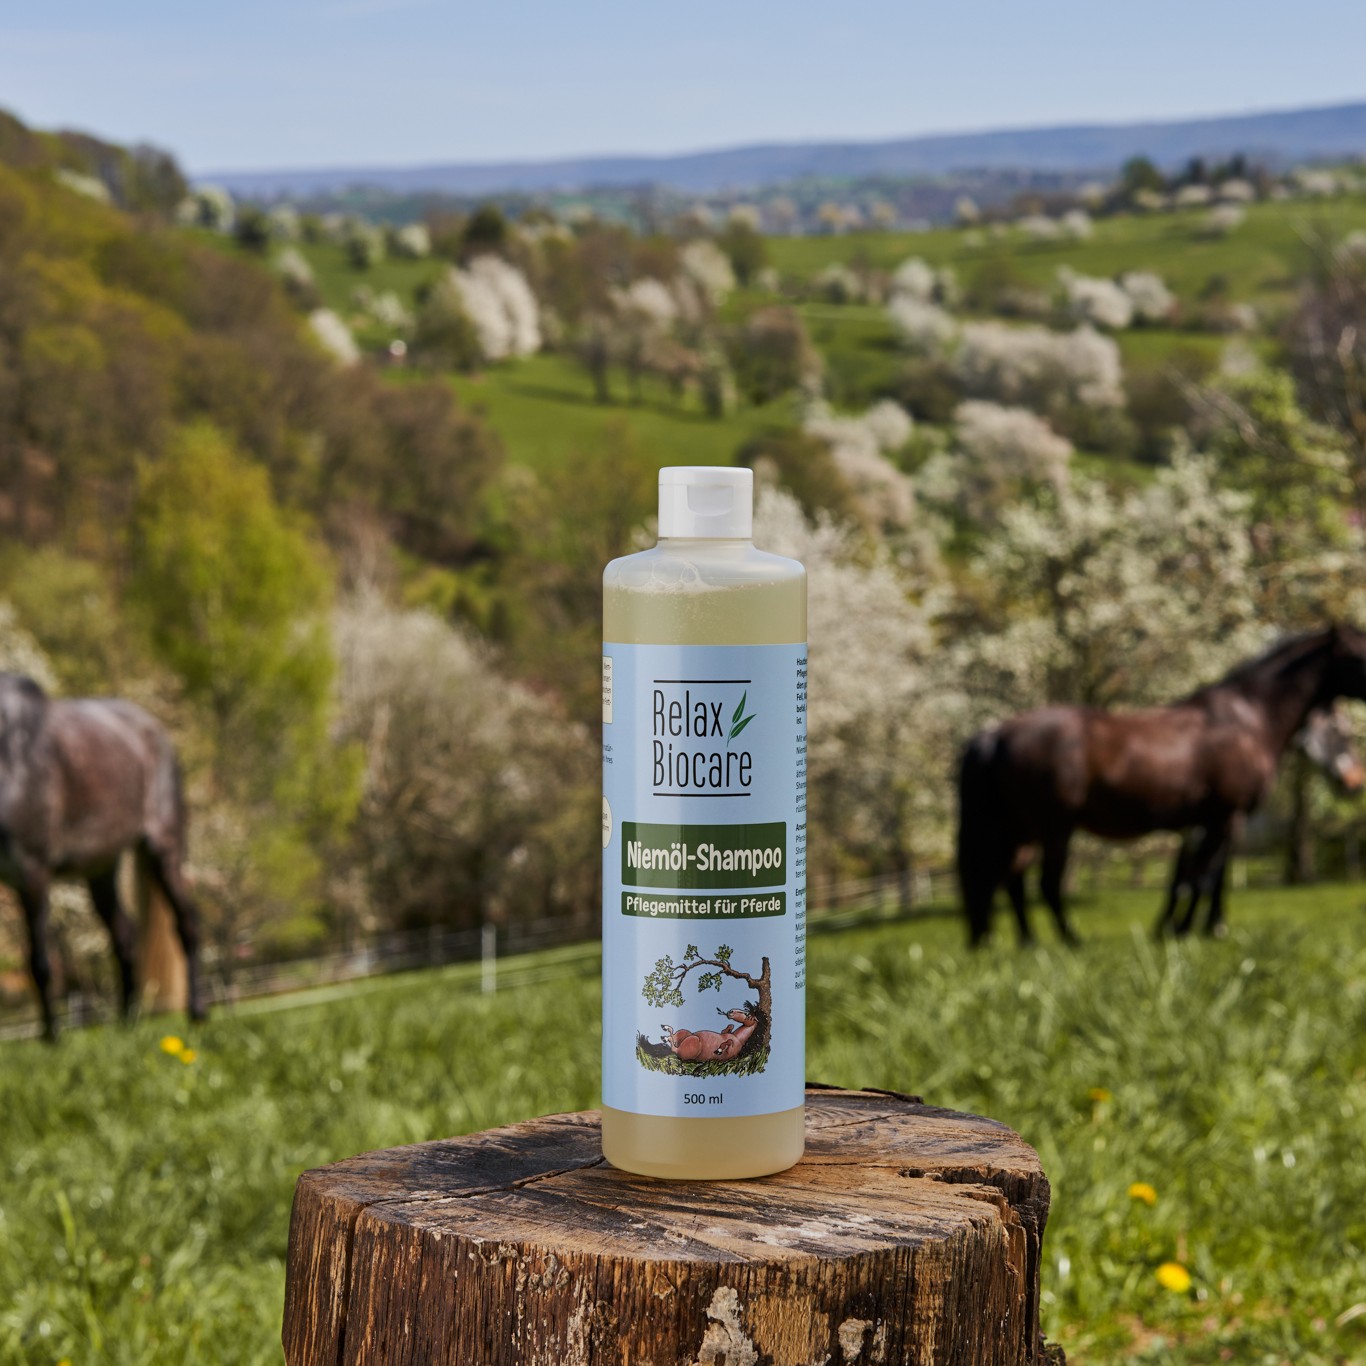 RELAX - Niemöl Shampoo - Pflegemittel für Pferde